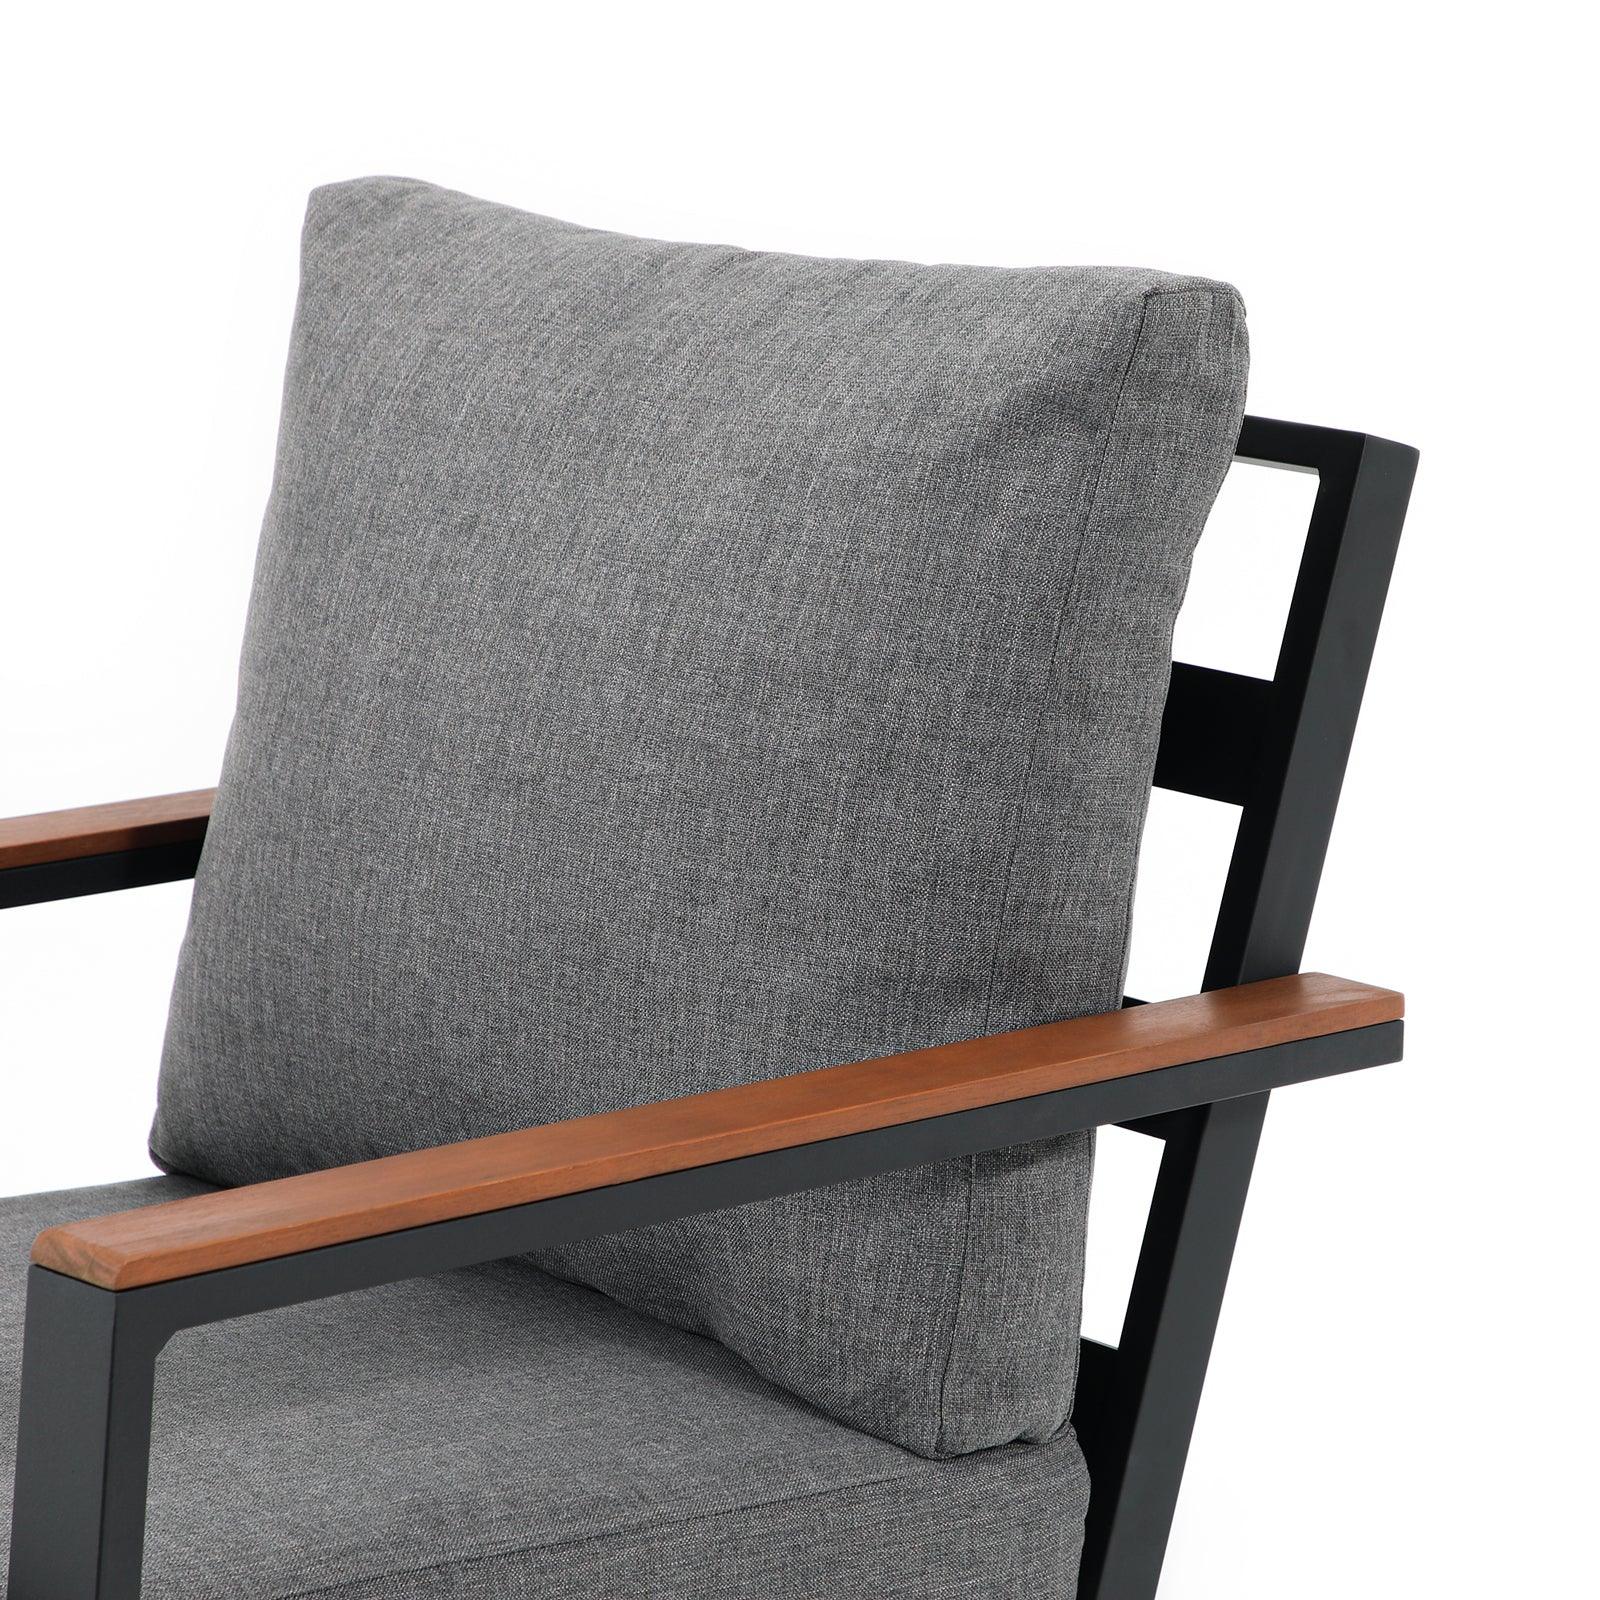 Ronda Grey aluminum outdoor sofa, grey cushions, durable aluminum frame, Chair close-up view- Jardina Furniture